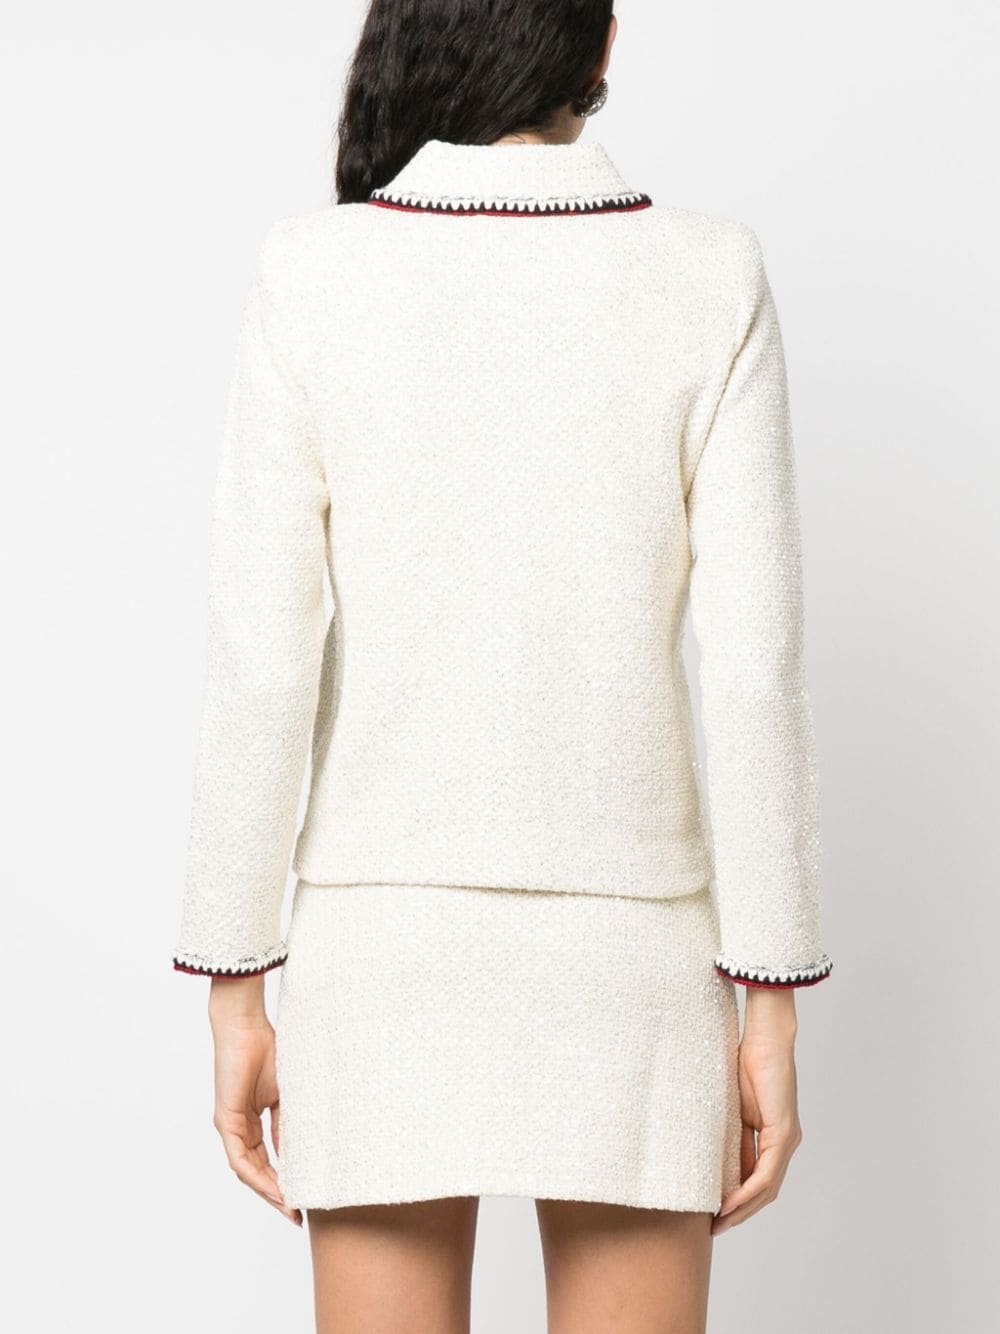 sequin-embellished knitted jacket - 4